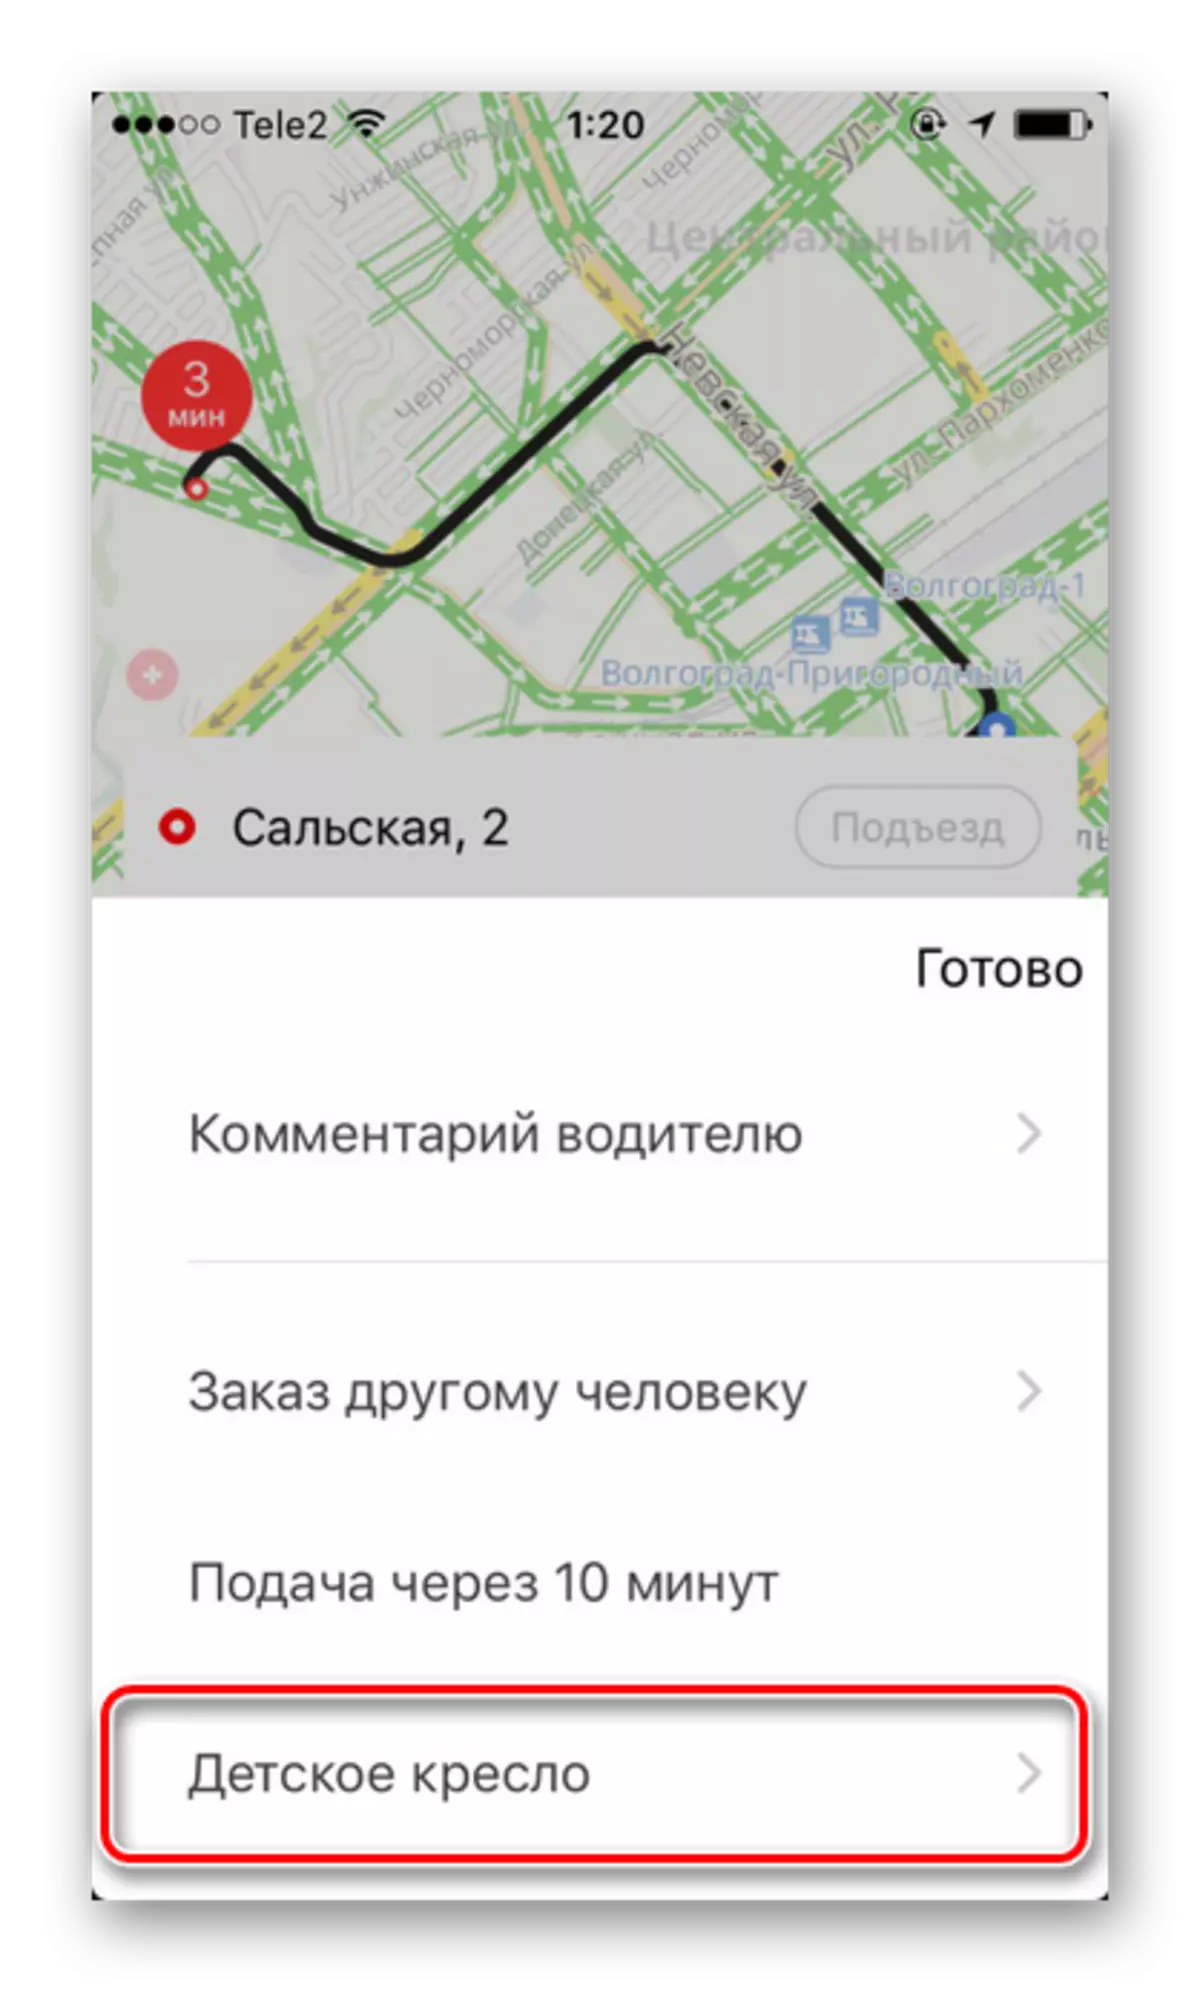 Extra service voor het aanbieden van een kinderstoel in Yandex.taxi op iPhone